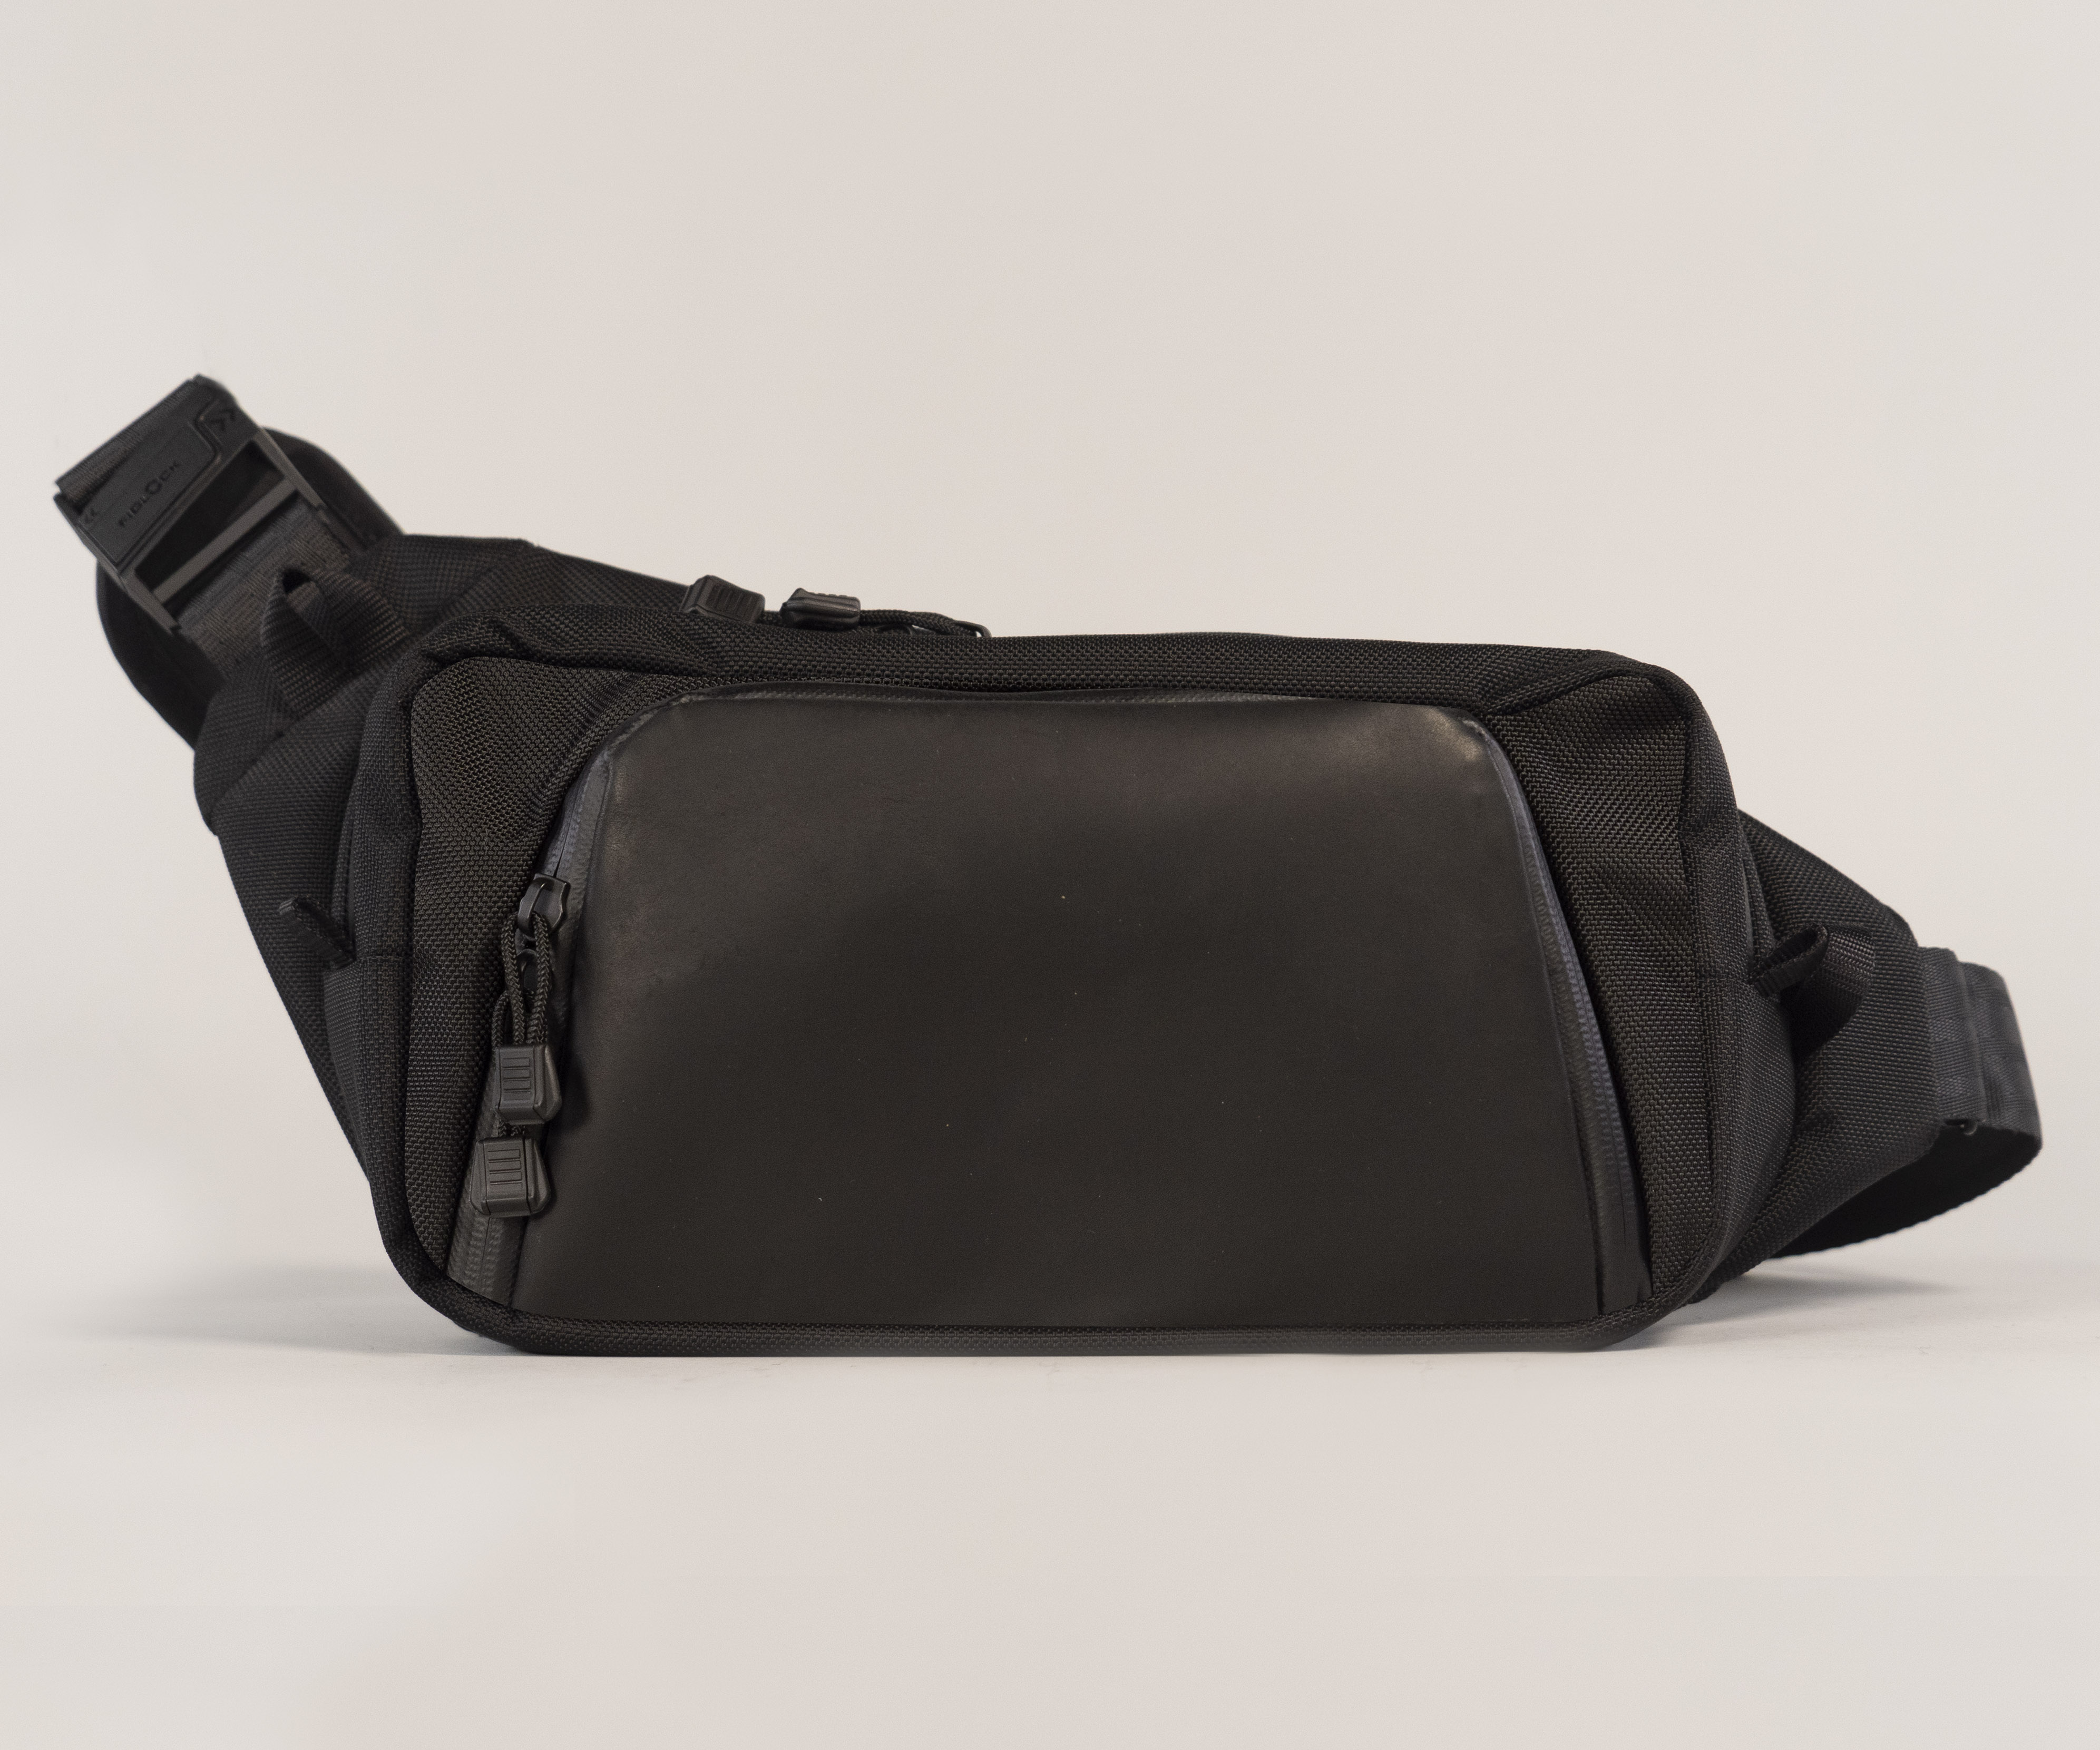 Moto Sling in black ballistic nylon and black full-grain leather